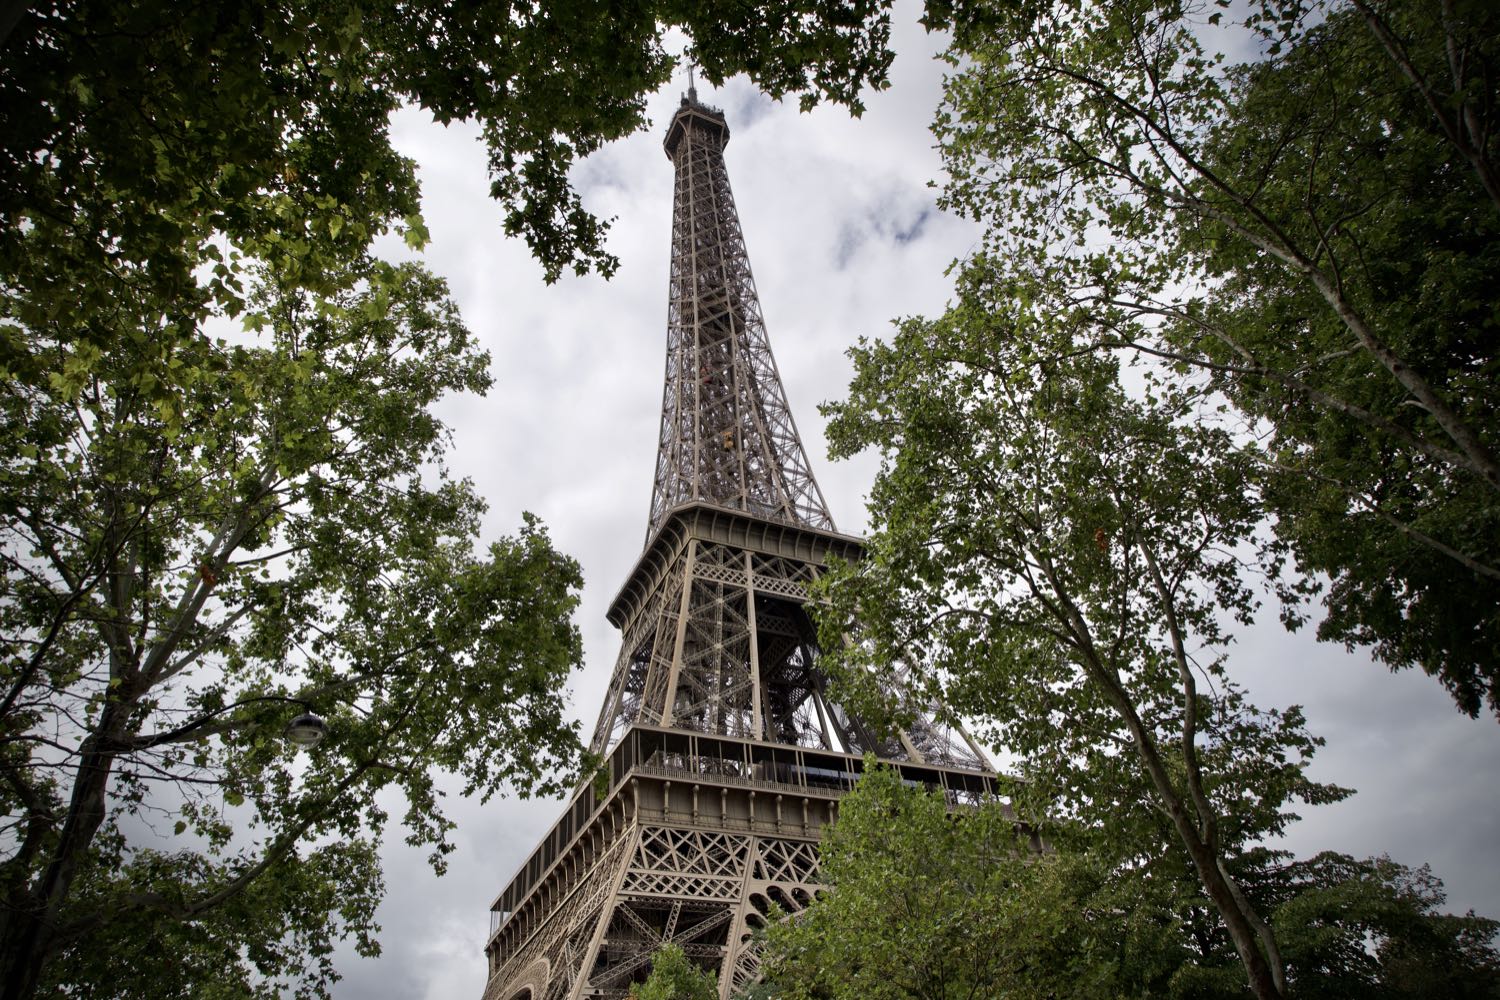 Paris - Eiffelturm